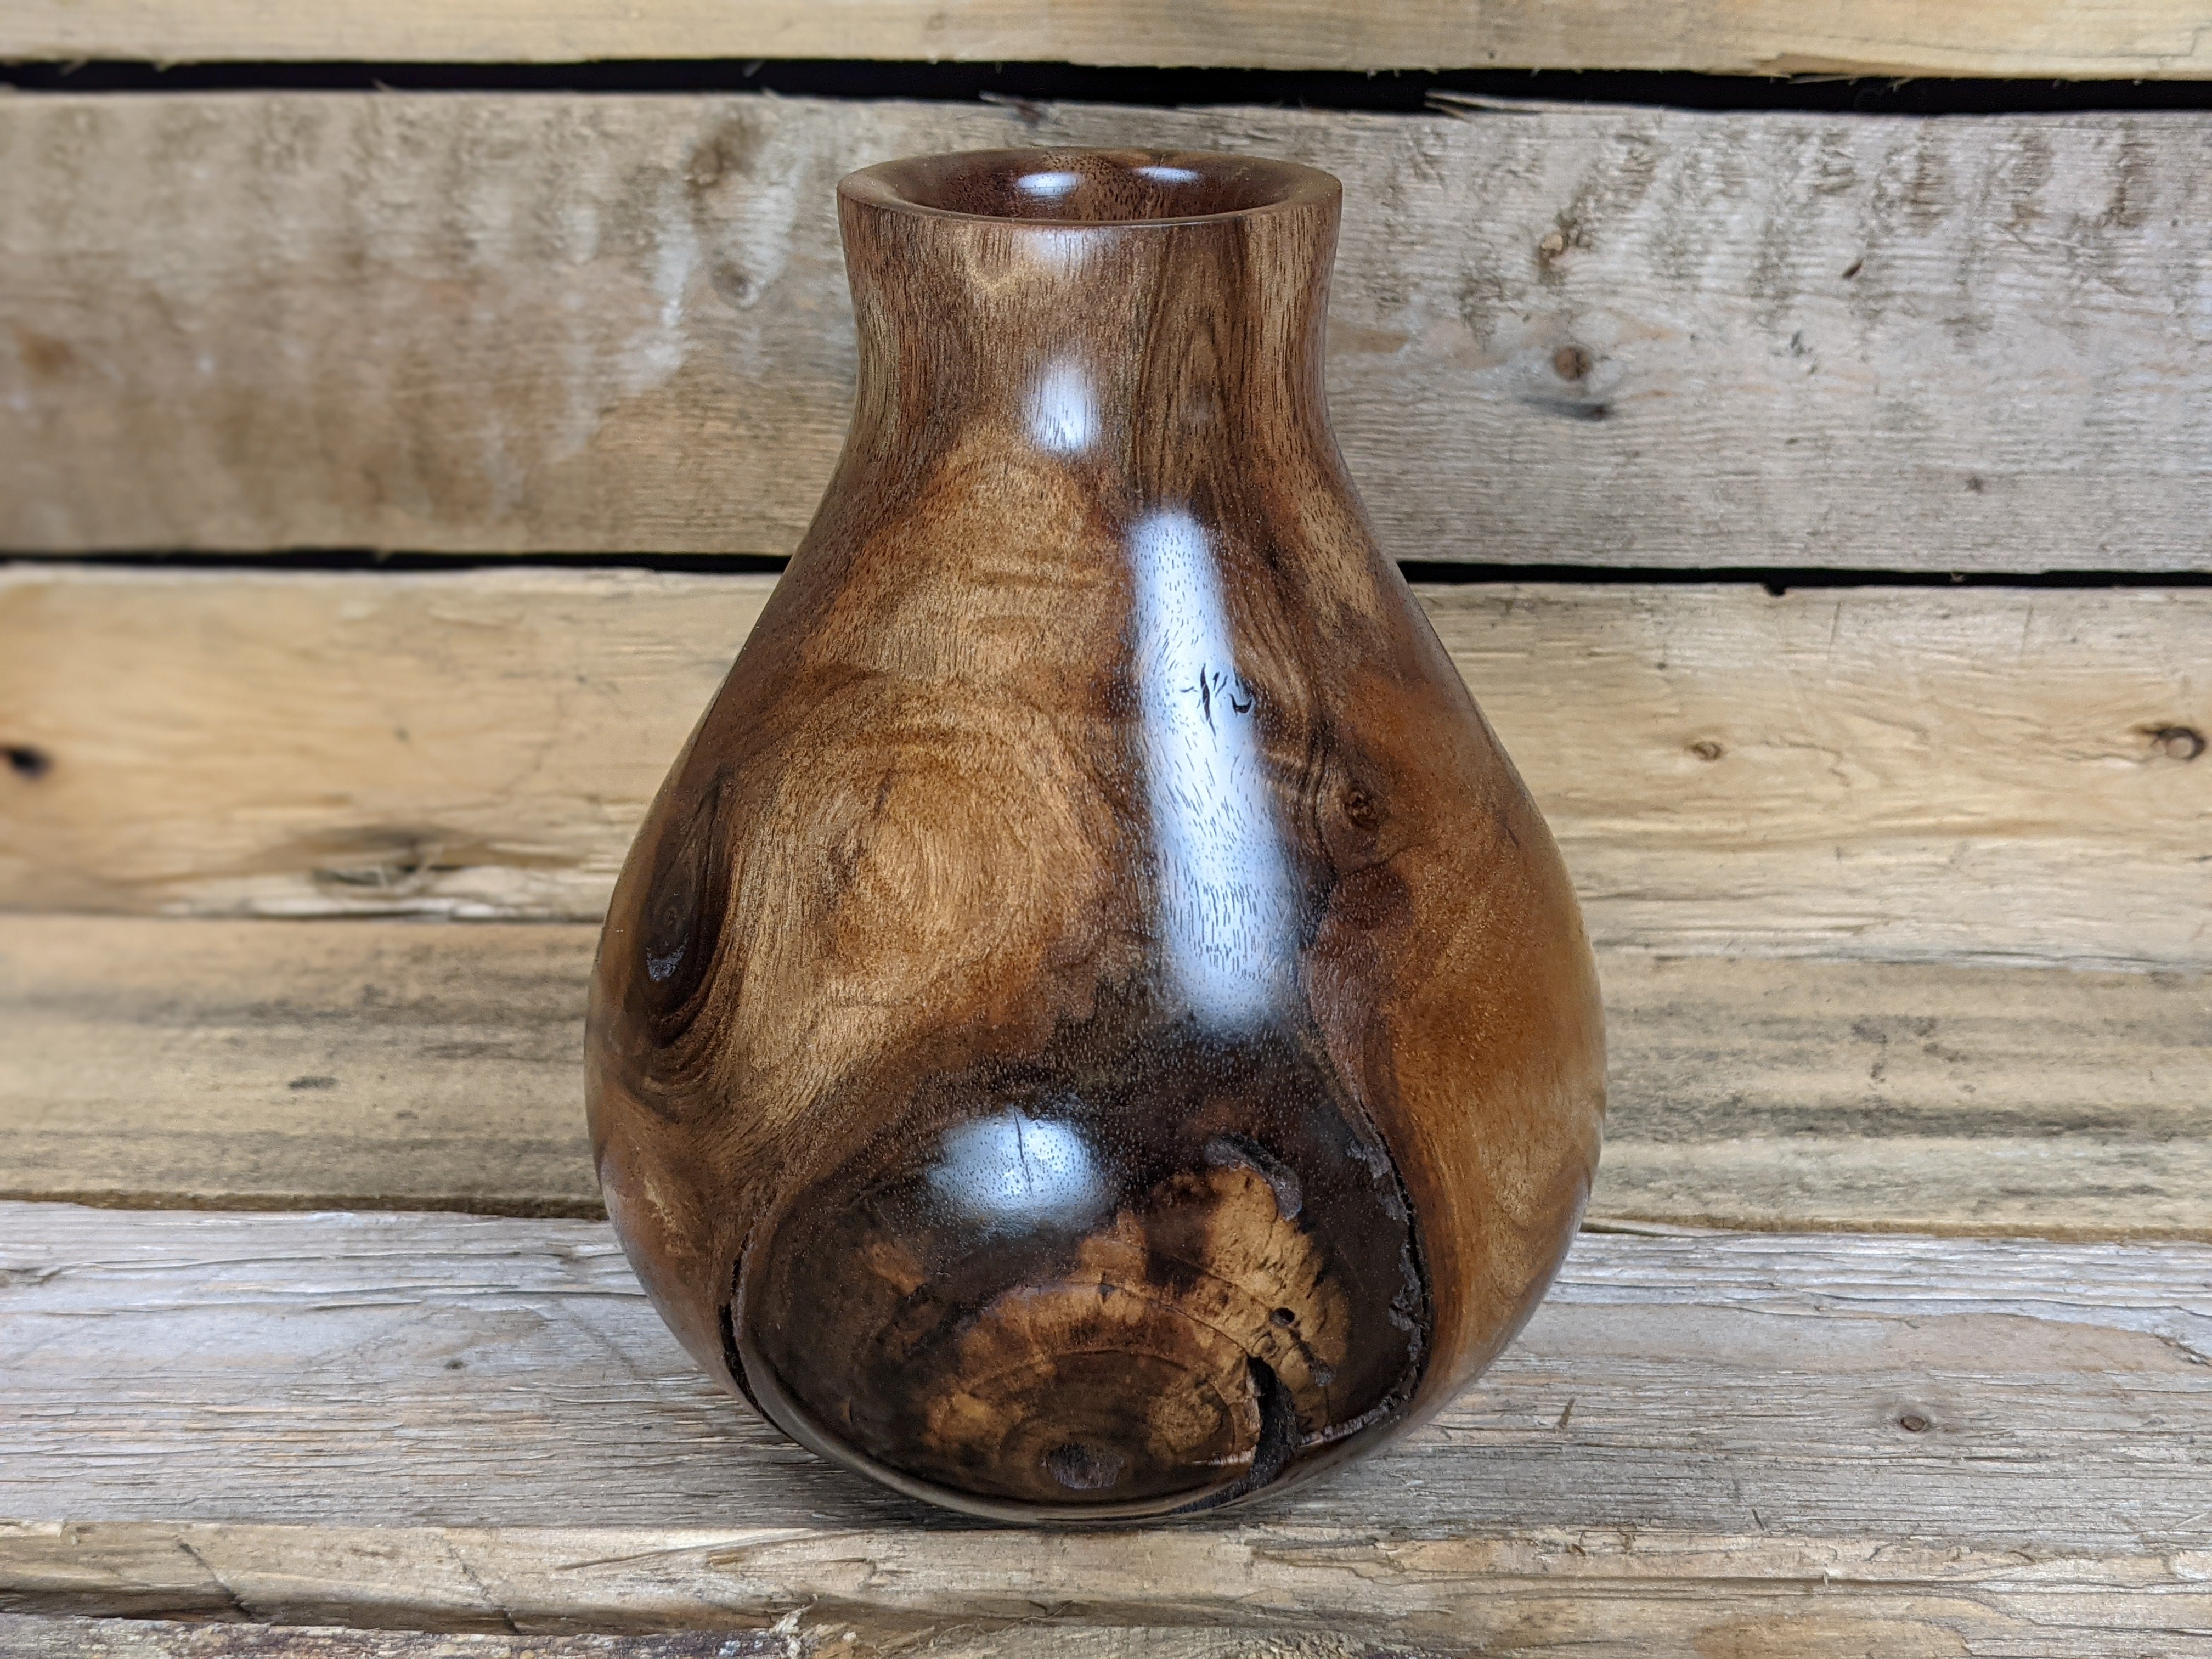 Knotty black walnut dry vase